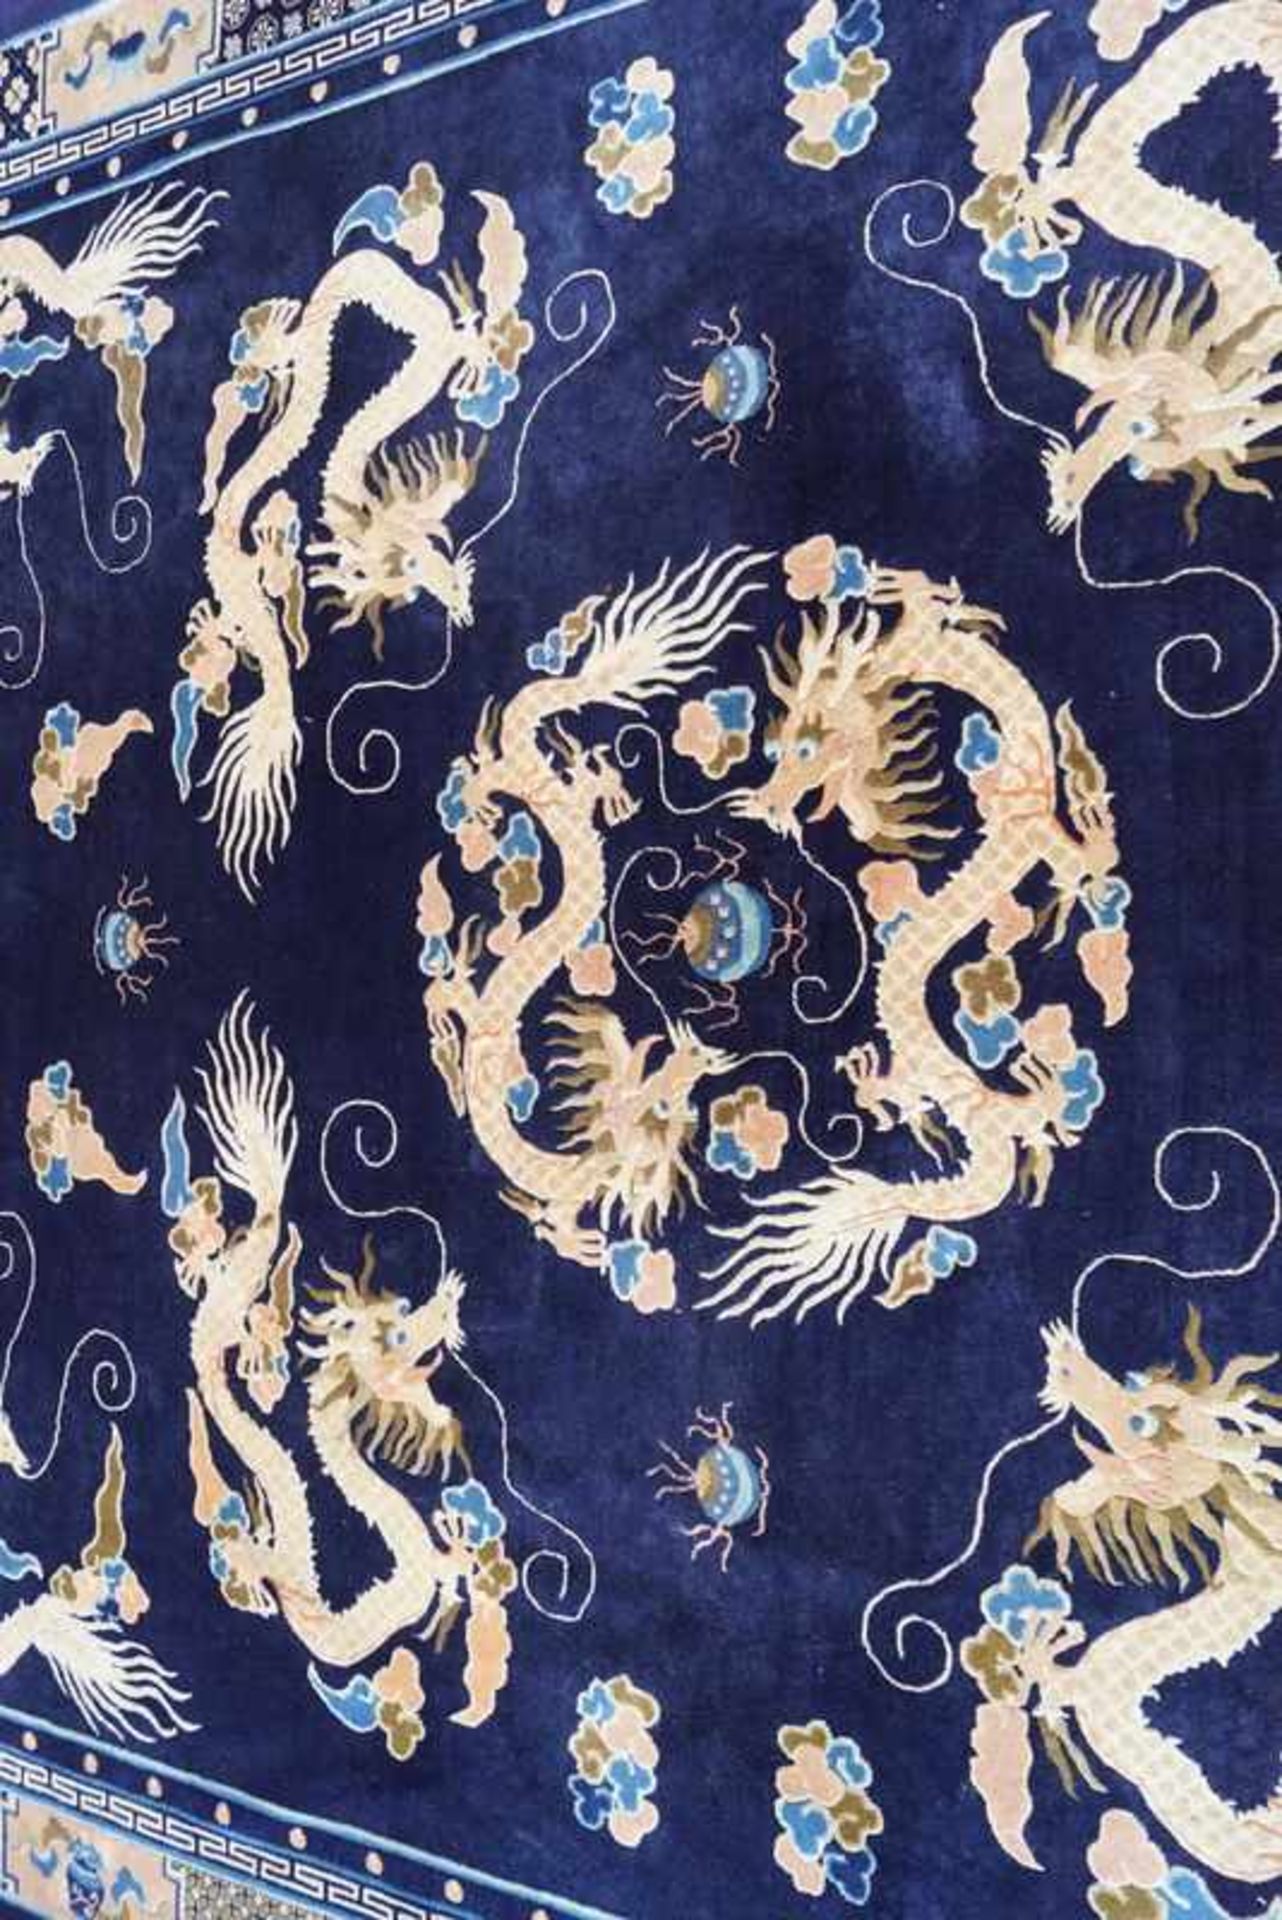 Großer Chinesischer Pao-Thao Pekingteppich Anilinfarben, Manchester Wolle auf Wolle, gepflegter - Bild 3 aus 4